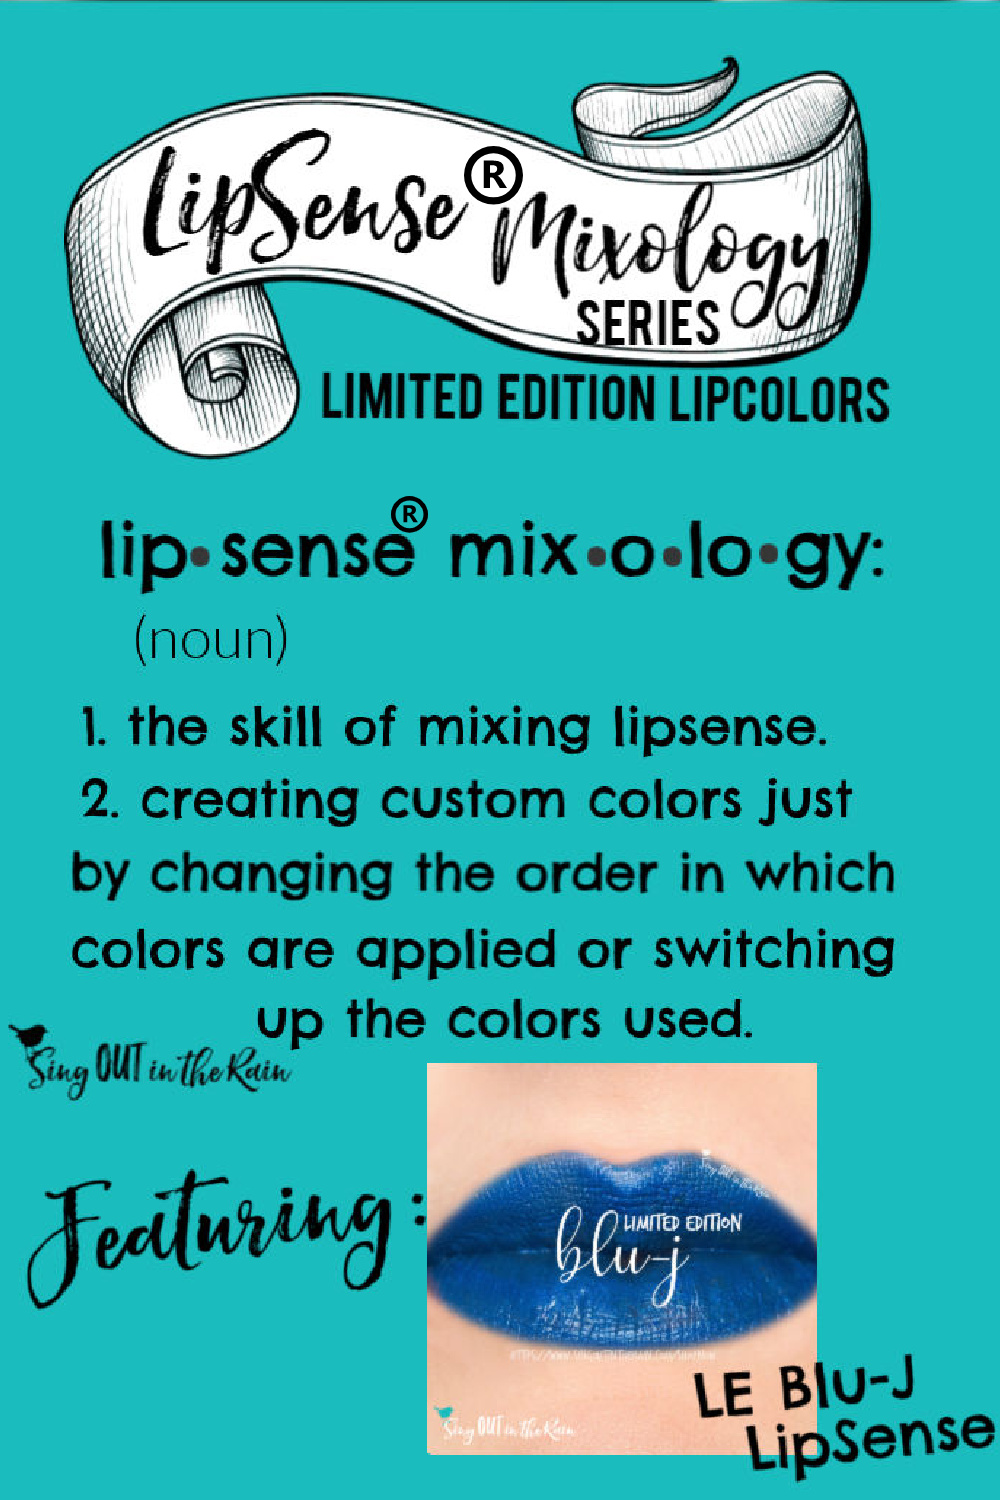 The Ultimate Guide to Blu-J LipSense Mixology